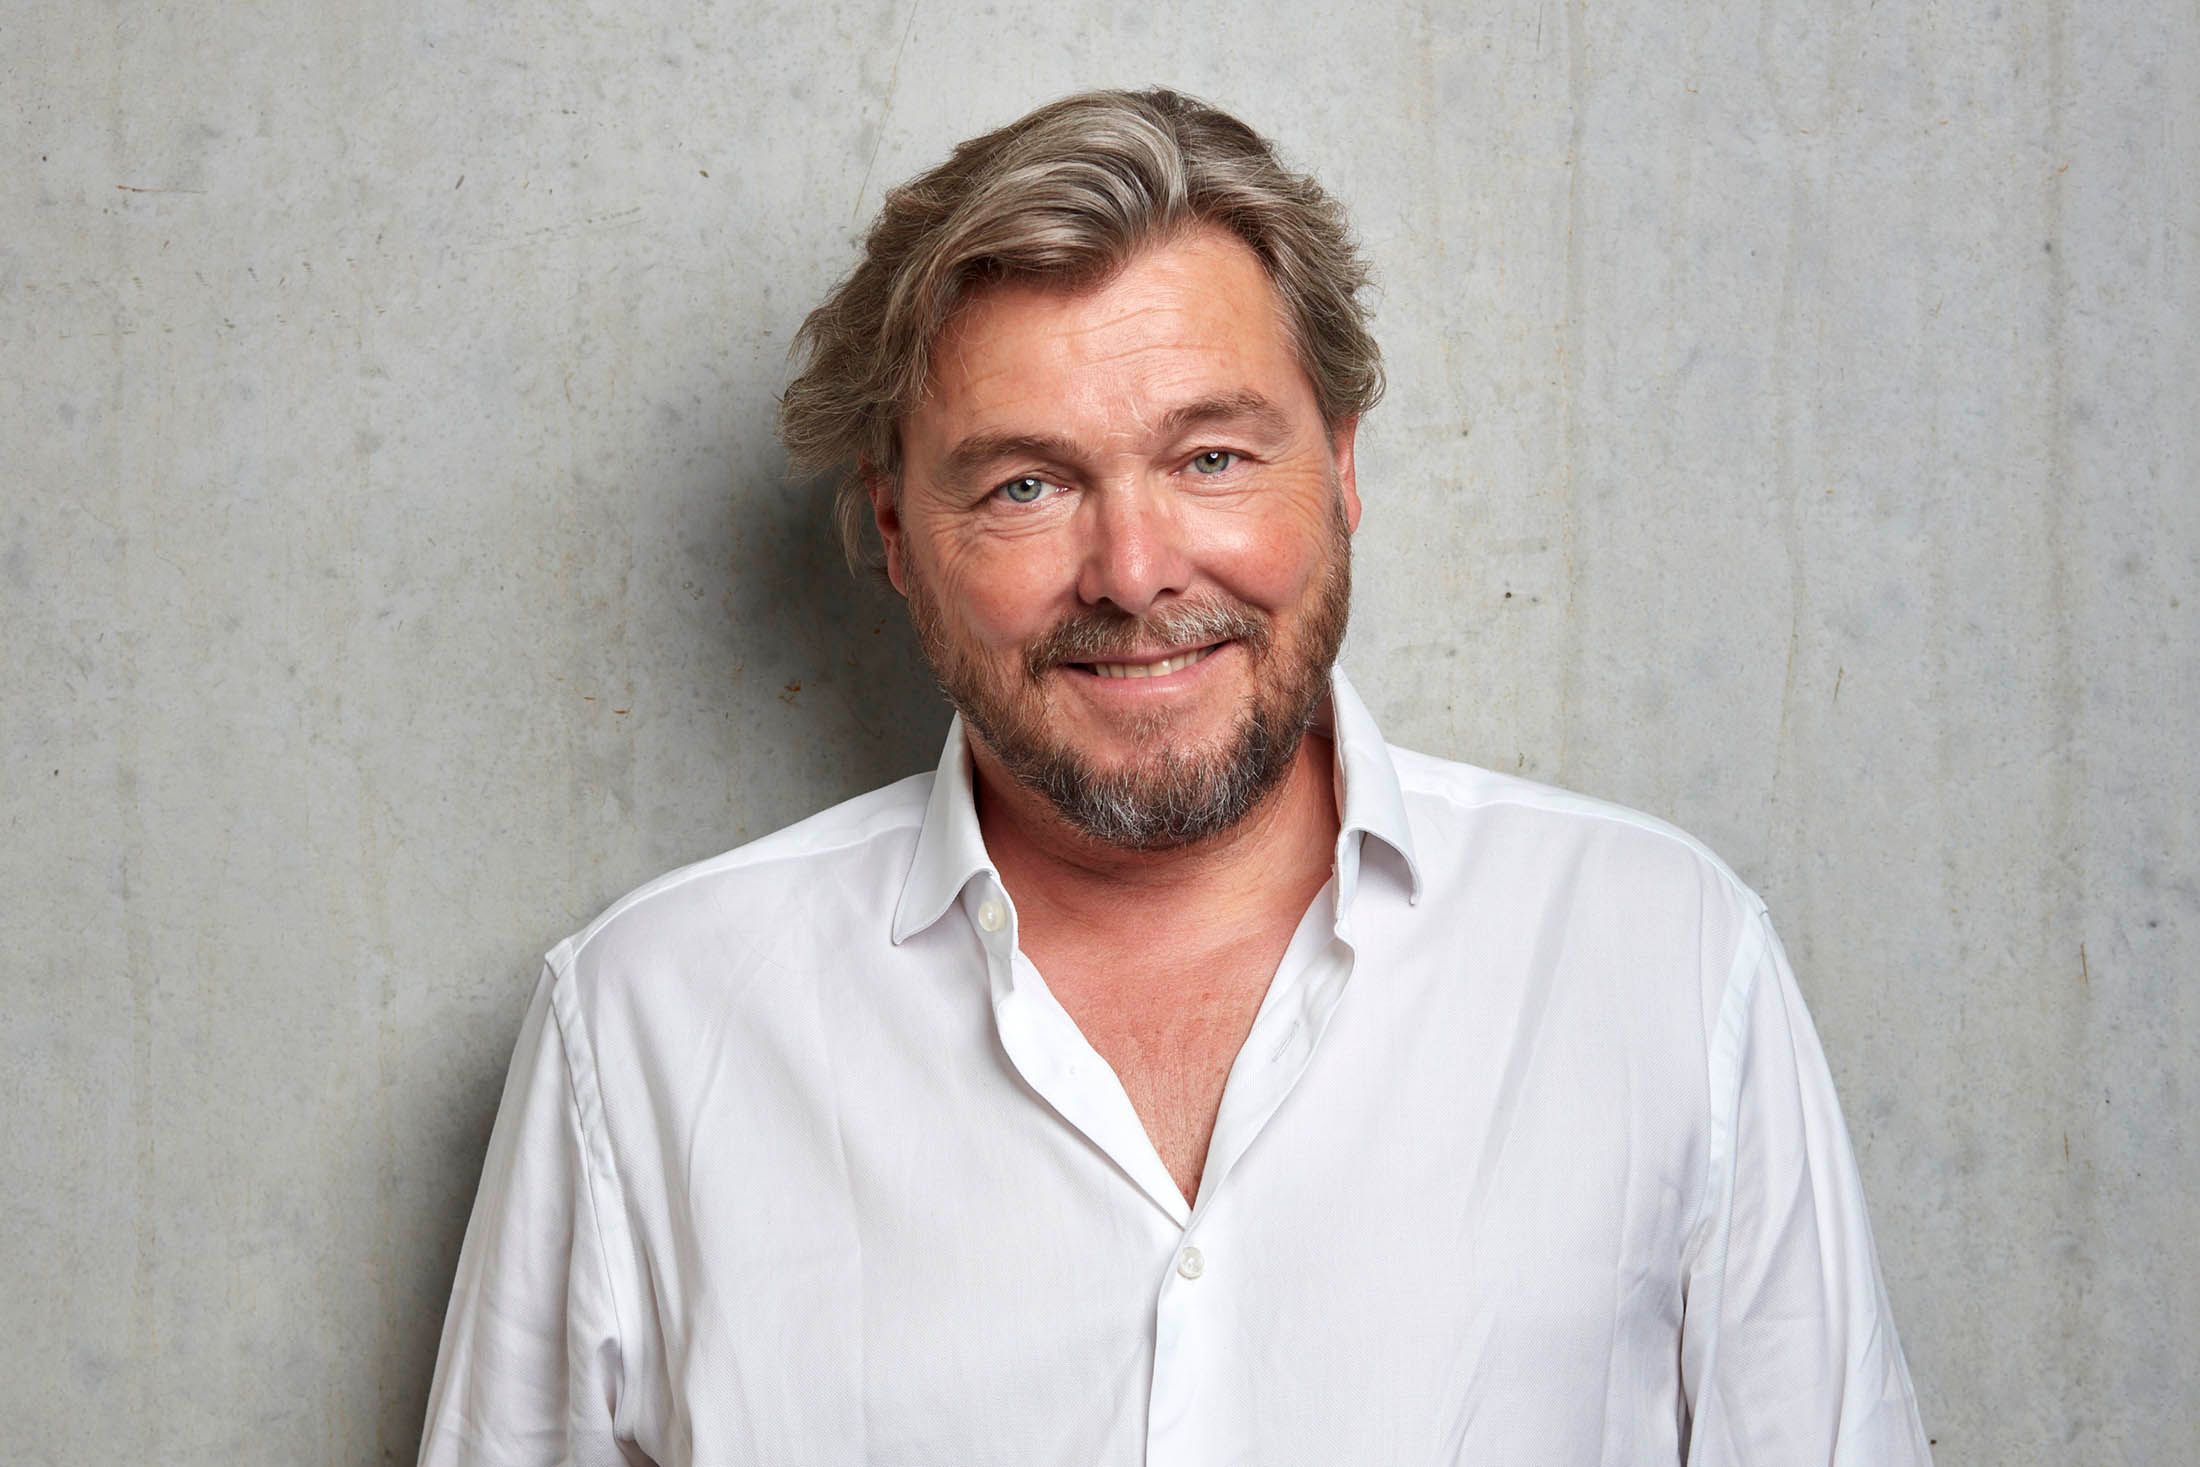 Farbfoto von Lars Krückeberg, er trägt ein weißes Hemd mit offenem Kragen und lächelt entspannt